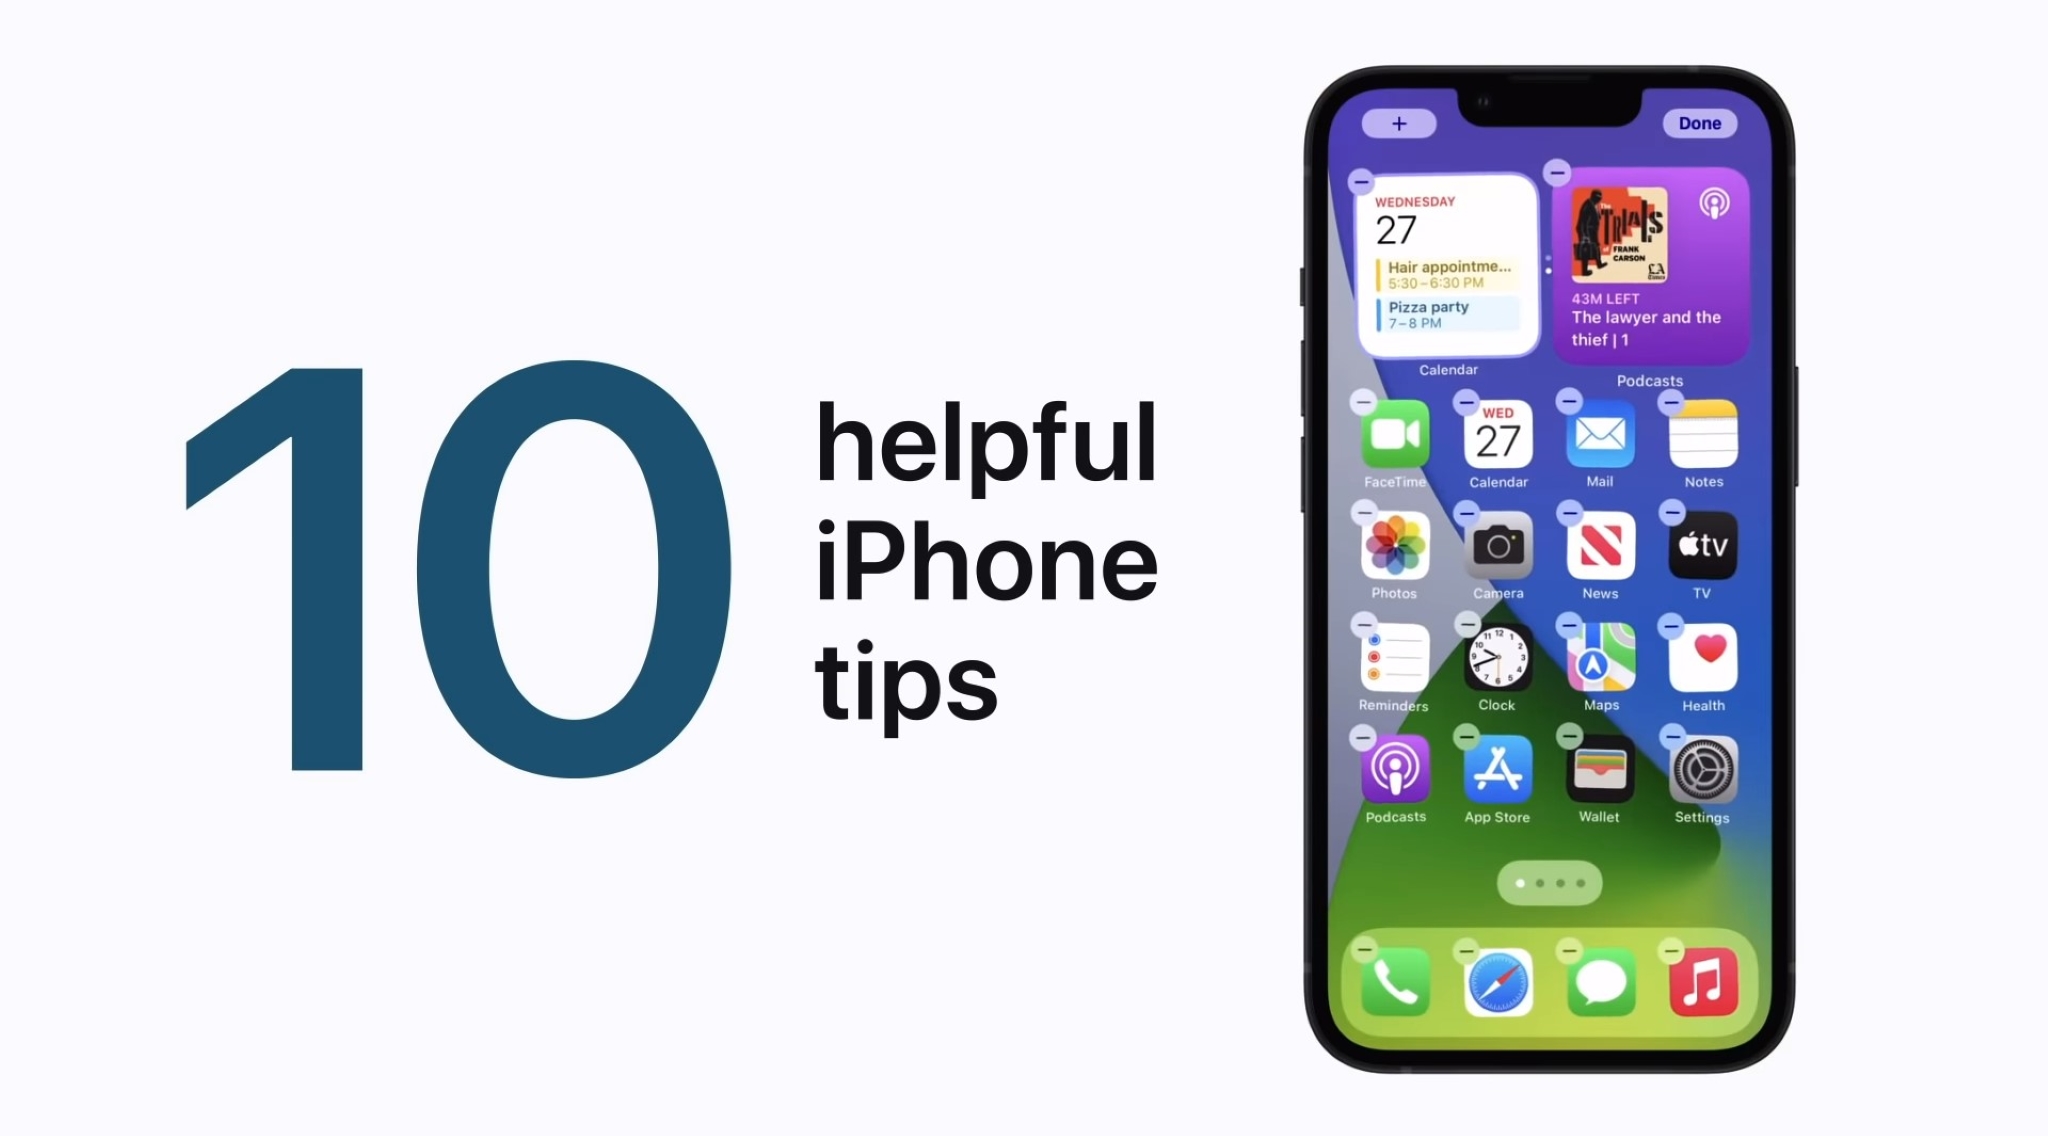 Apple chia sẻ 10 thủ thuật sử dụng iPhone hữu ích qua video, mời anh em trải nghiệm nhé